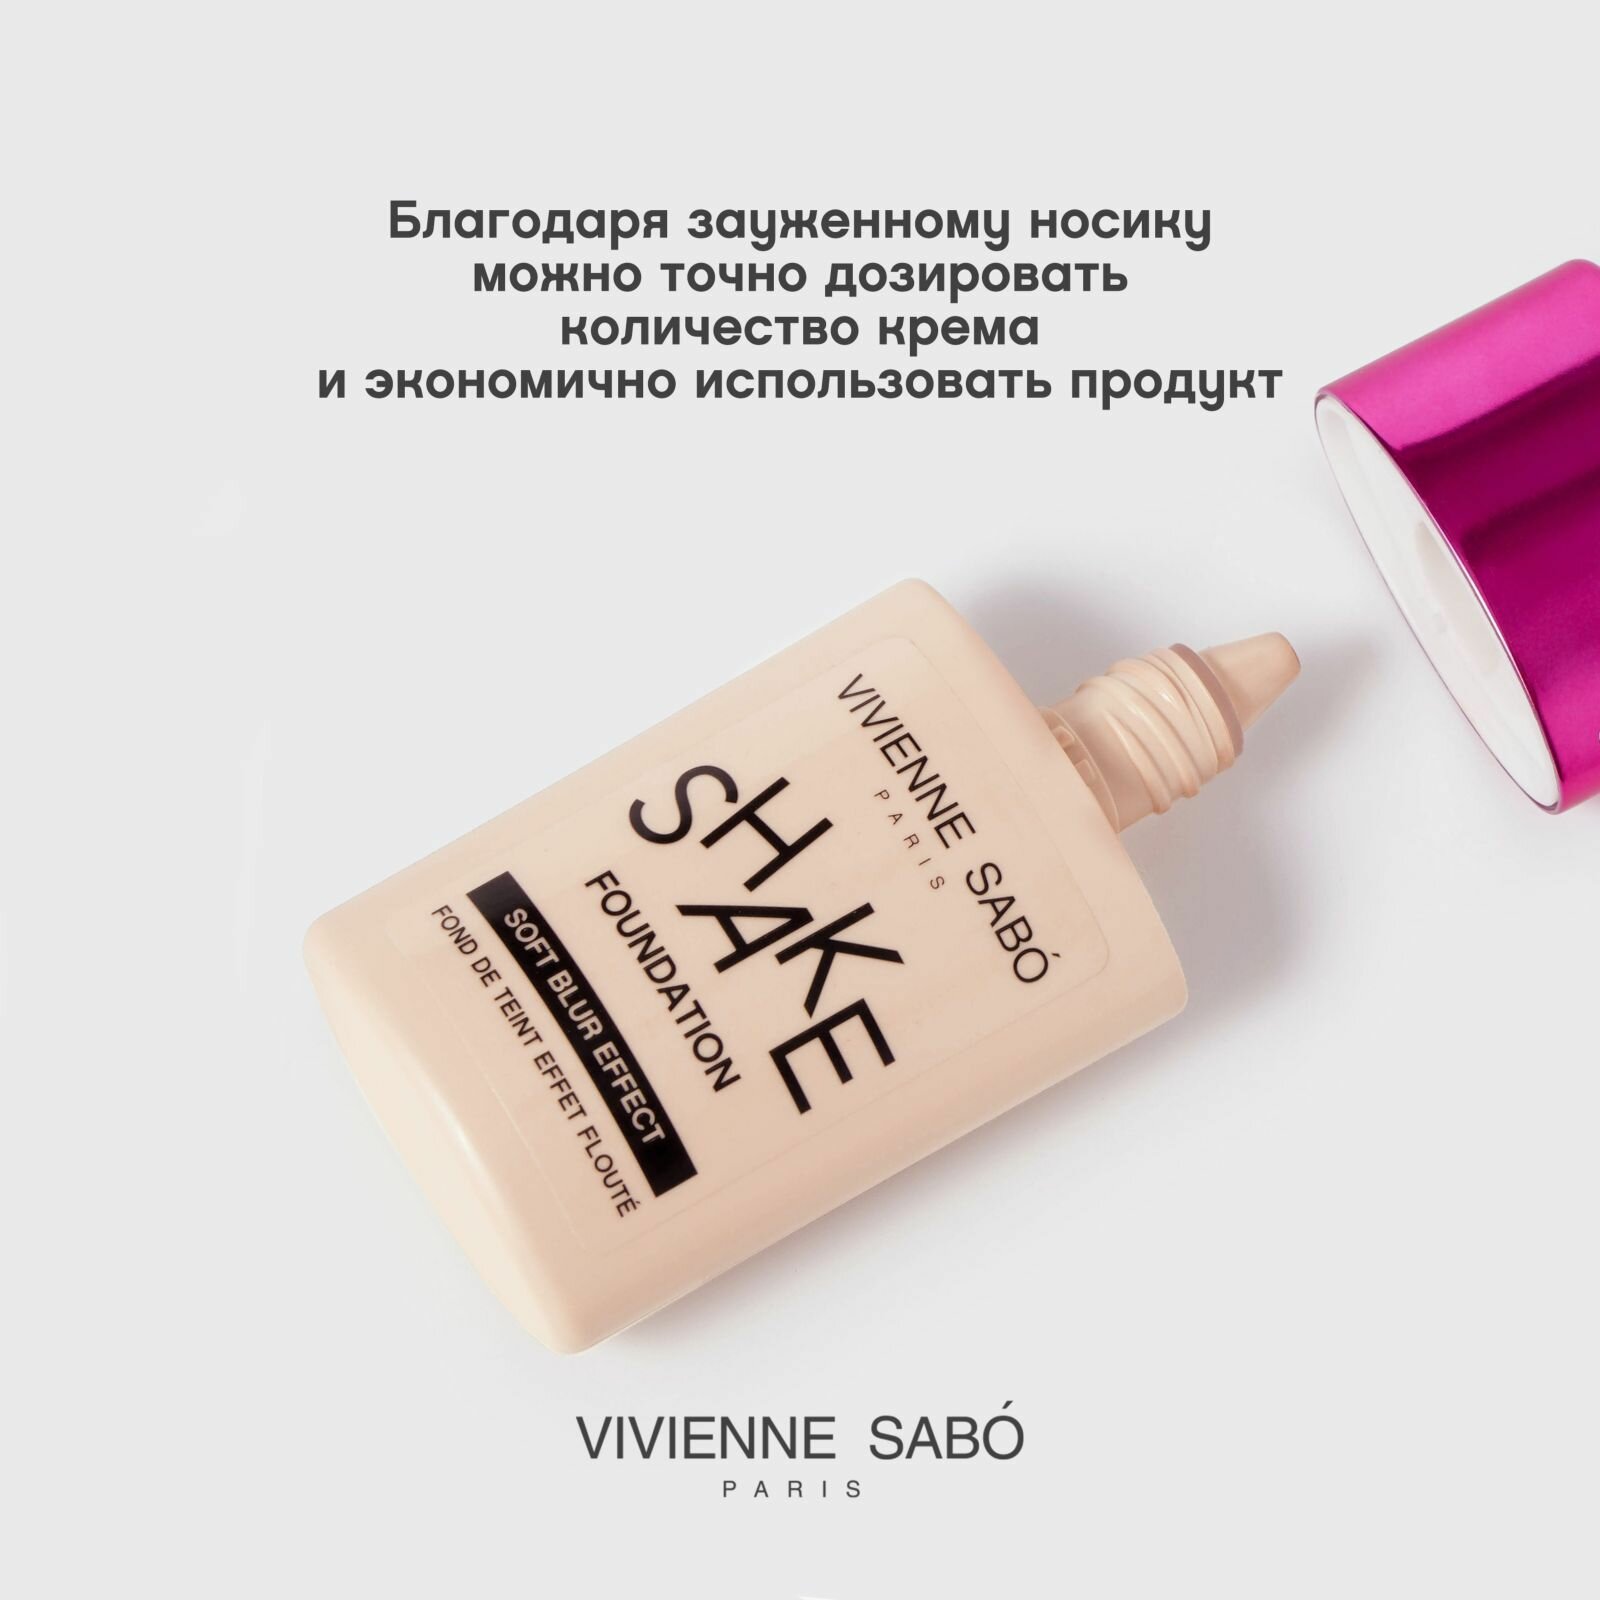 Тональный крем Vivienne Sabo Shakefoundation с натуральным блюр эффектом тон 04 25мл ООО Хелен-косметик - фото №14